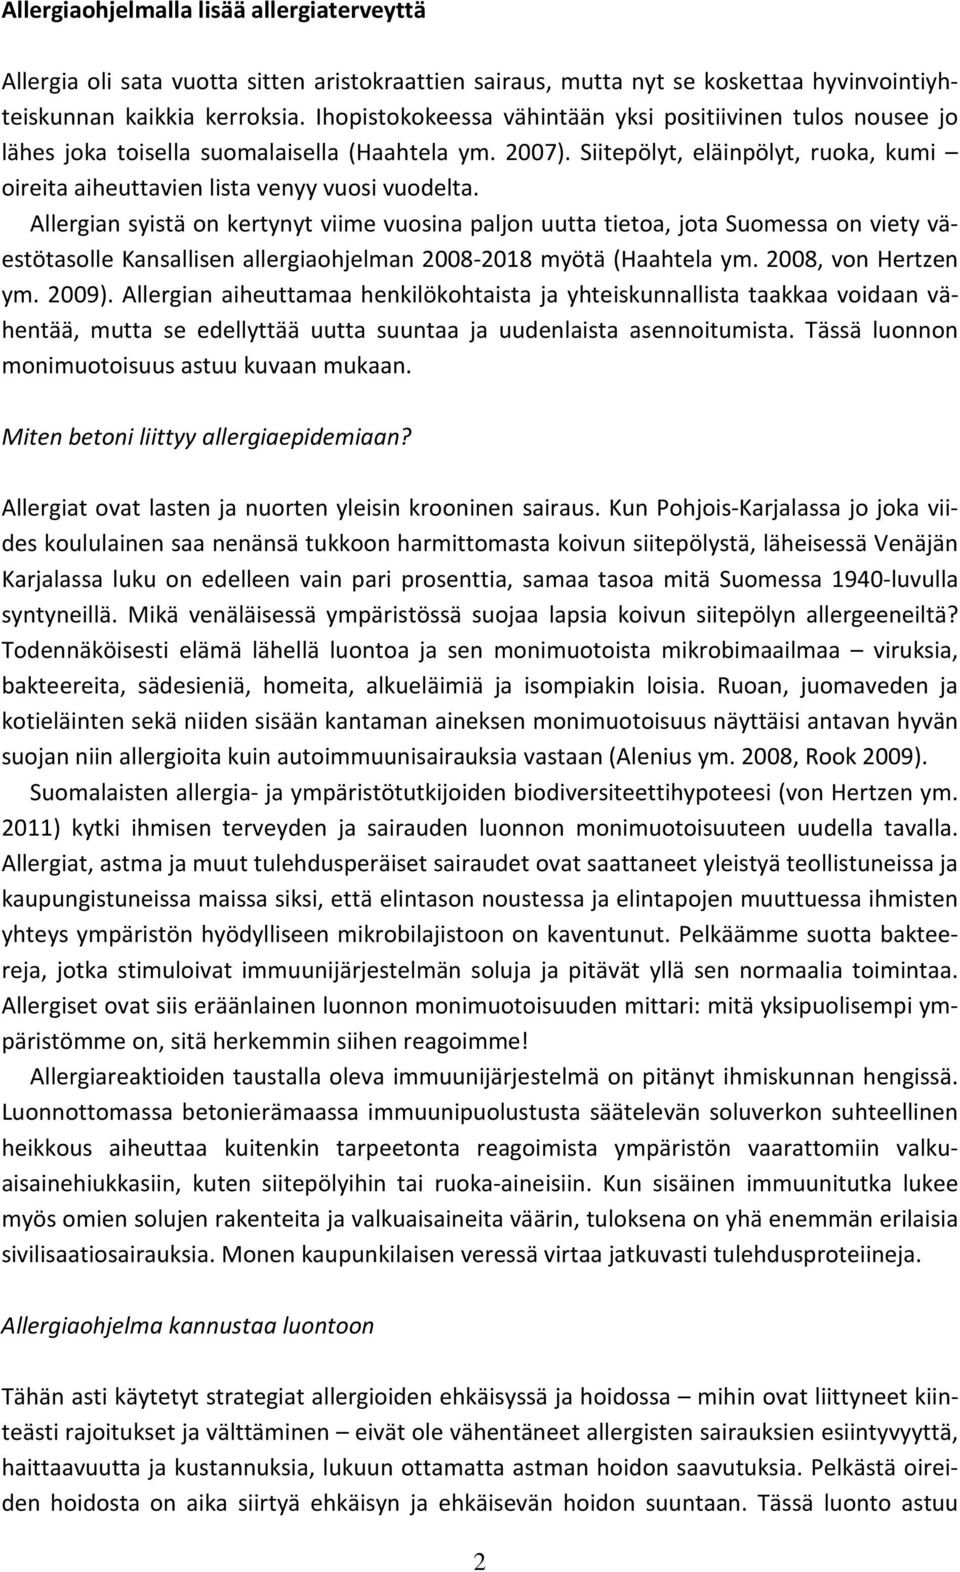 Allergian syistä on kertynyt viime vuosina paljon uutta tietoa, jota Suomessa on viety väestötasolle Kansallisen allergiaohjelman 2008-2018 myötä (Haahtela ym. 2008, von Hertzen ym. 2009).